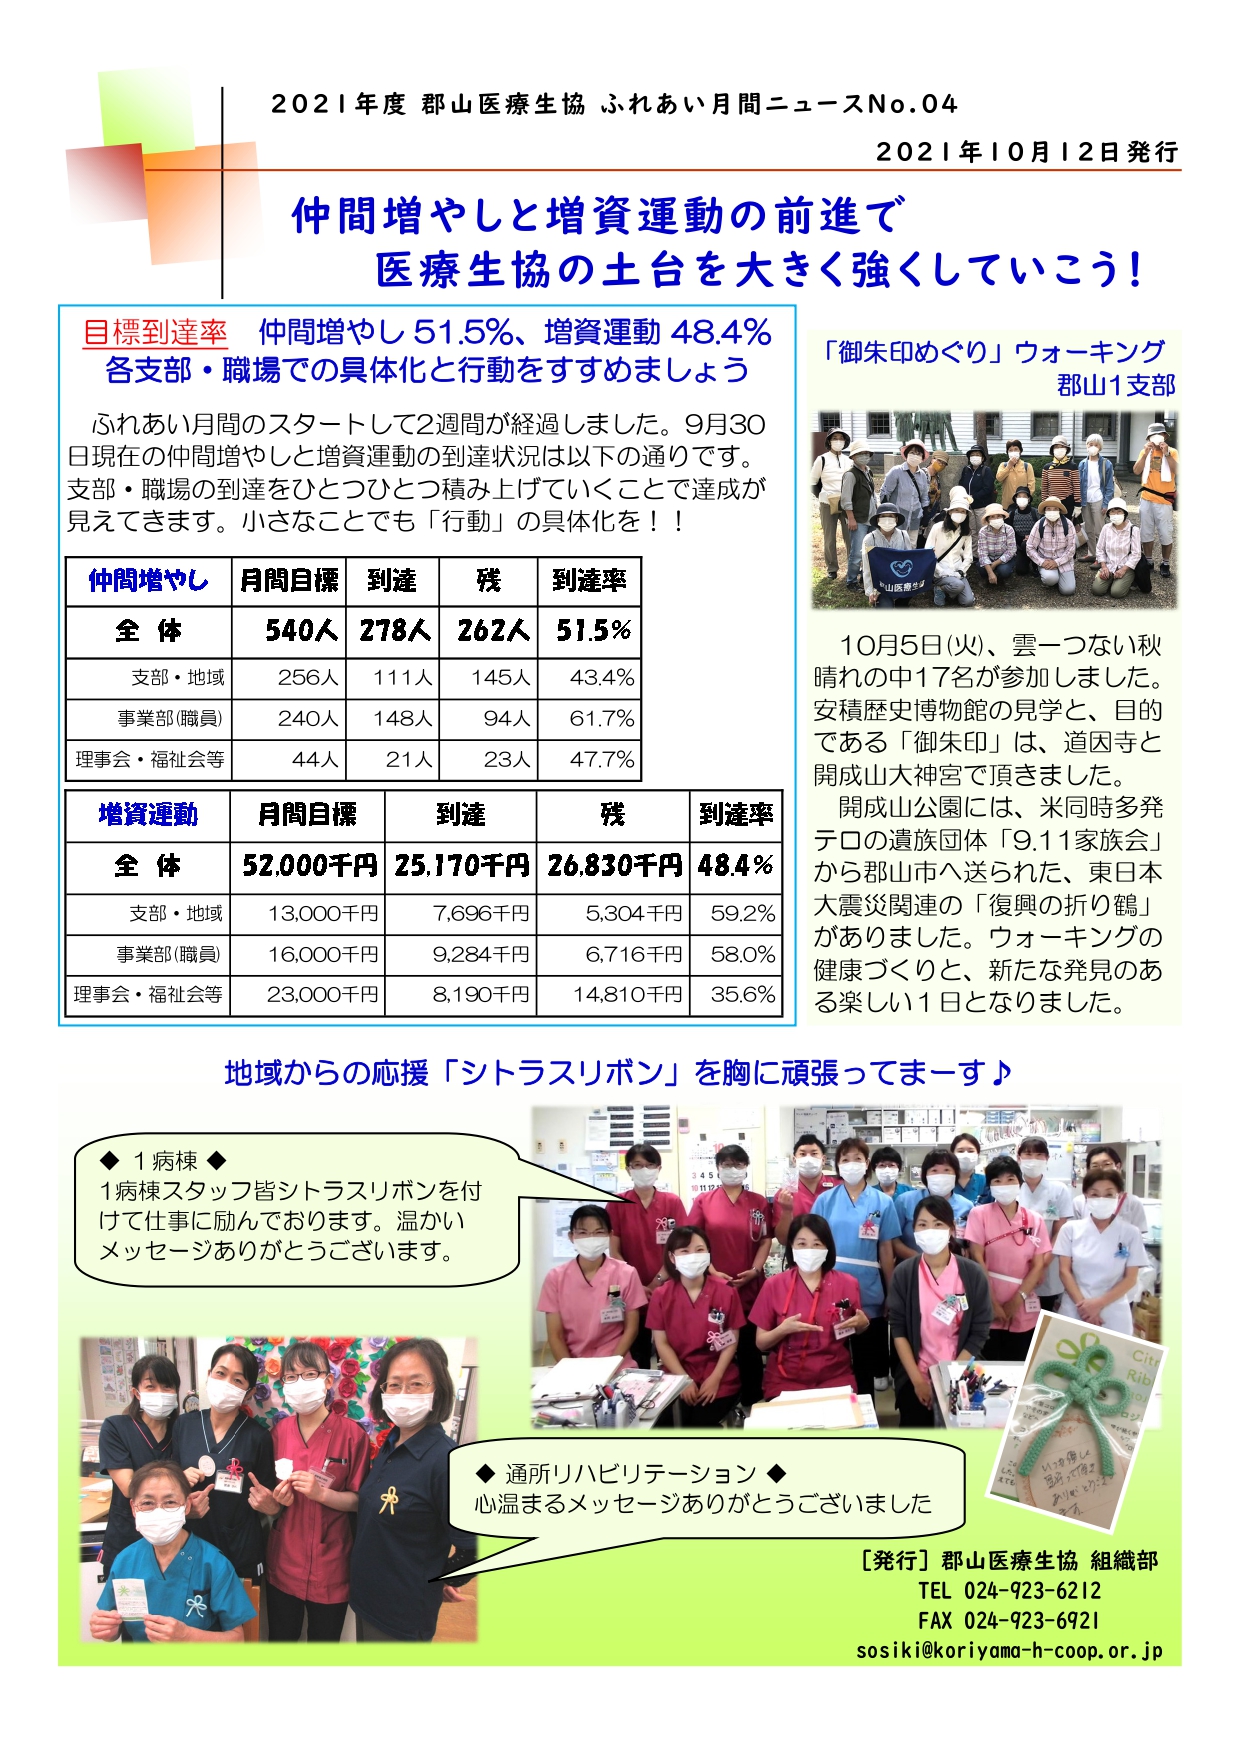 2021年度 郡山医療生協 ふれあい月間ニュース No.04 2021.10.12_page-0001.jpg